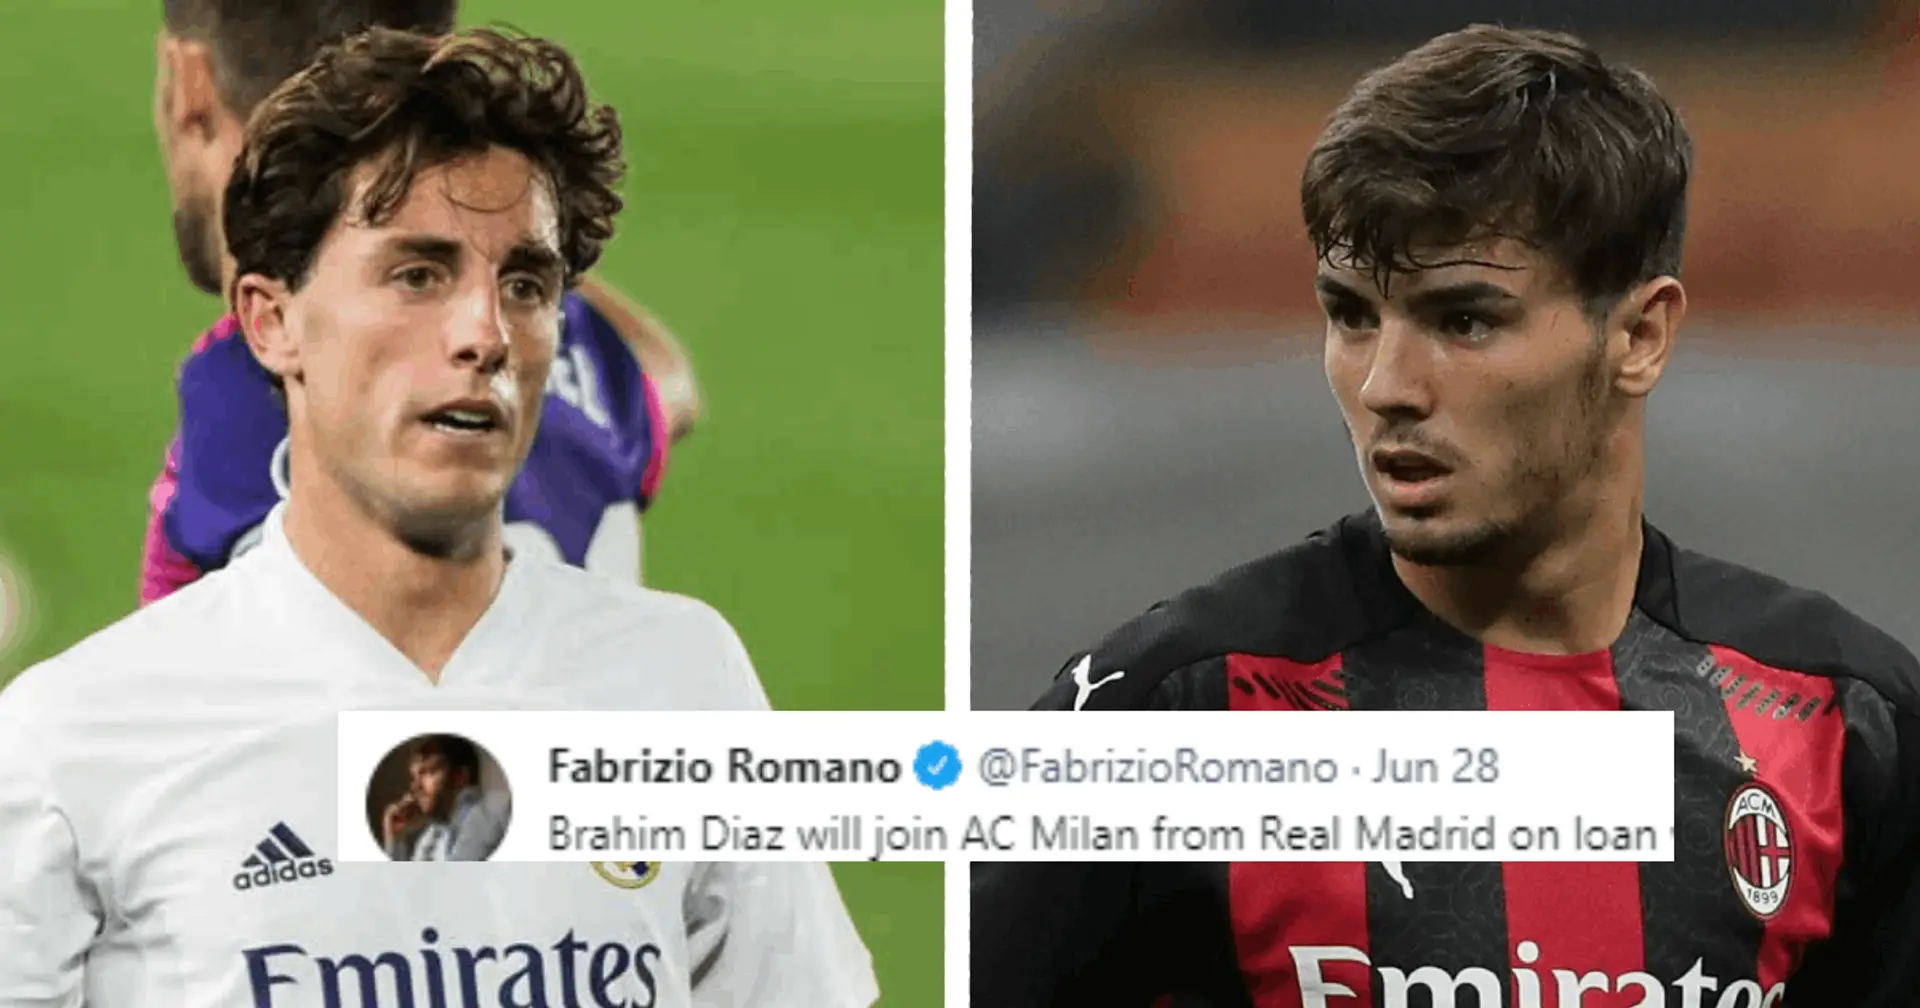 Fabrizio Romano revela detalles del acuerdo entre Milan y Real Madrid por Brahim Díaz (fiabilidad: 5 estrellas)